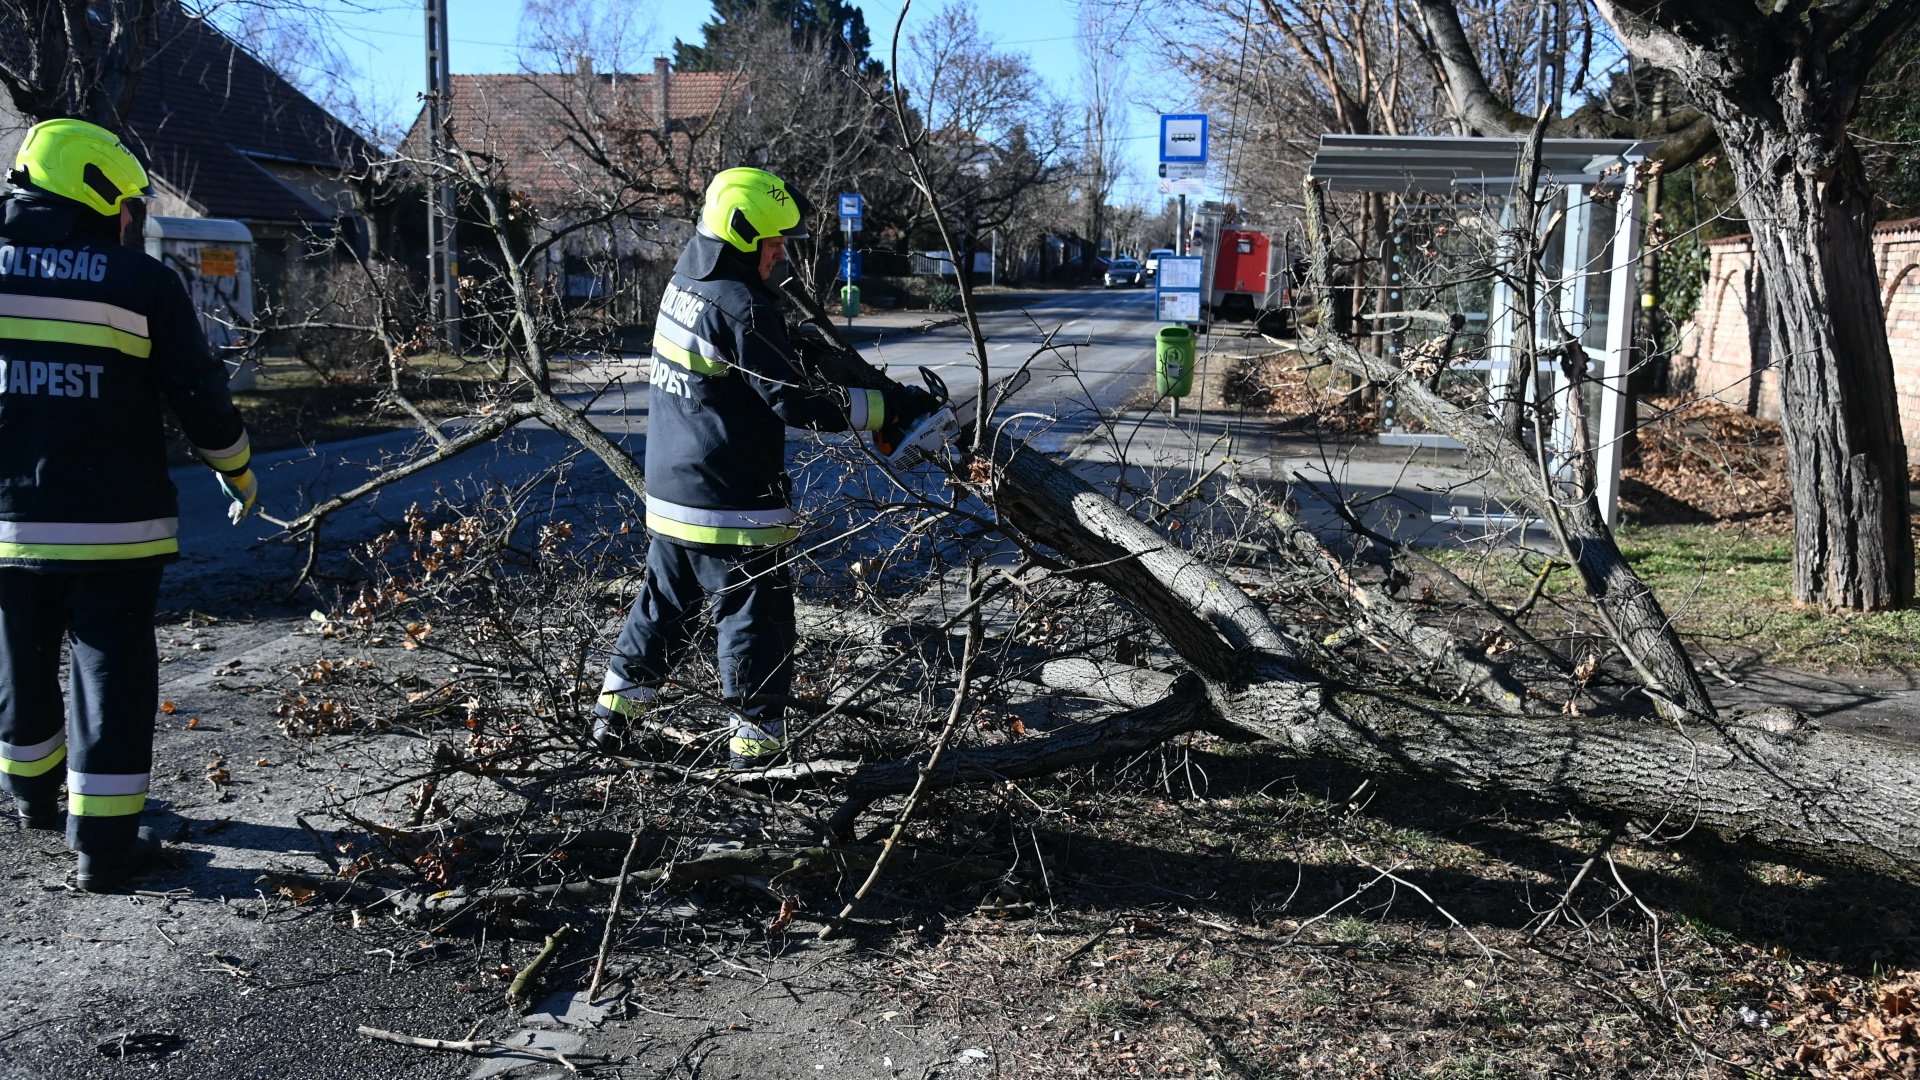 A viharos szél által kidöntött fát aprítanak a tűzoltók